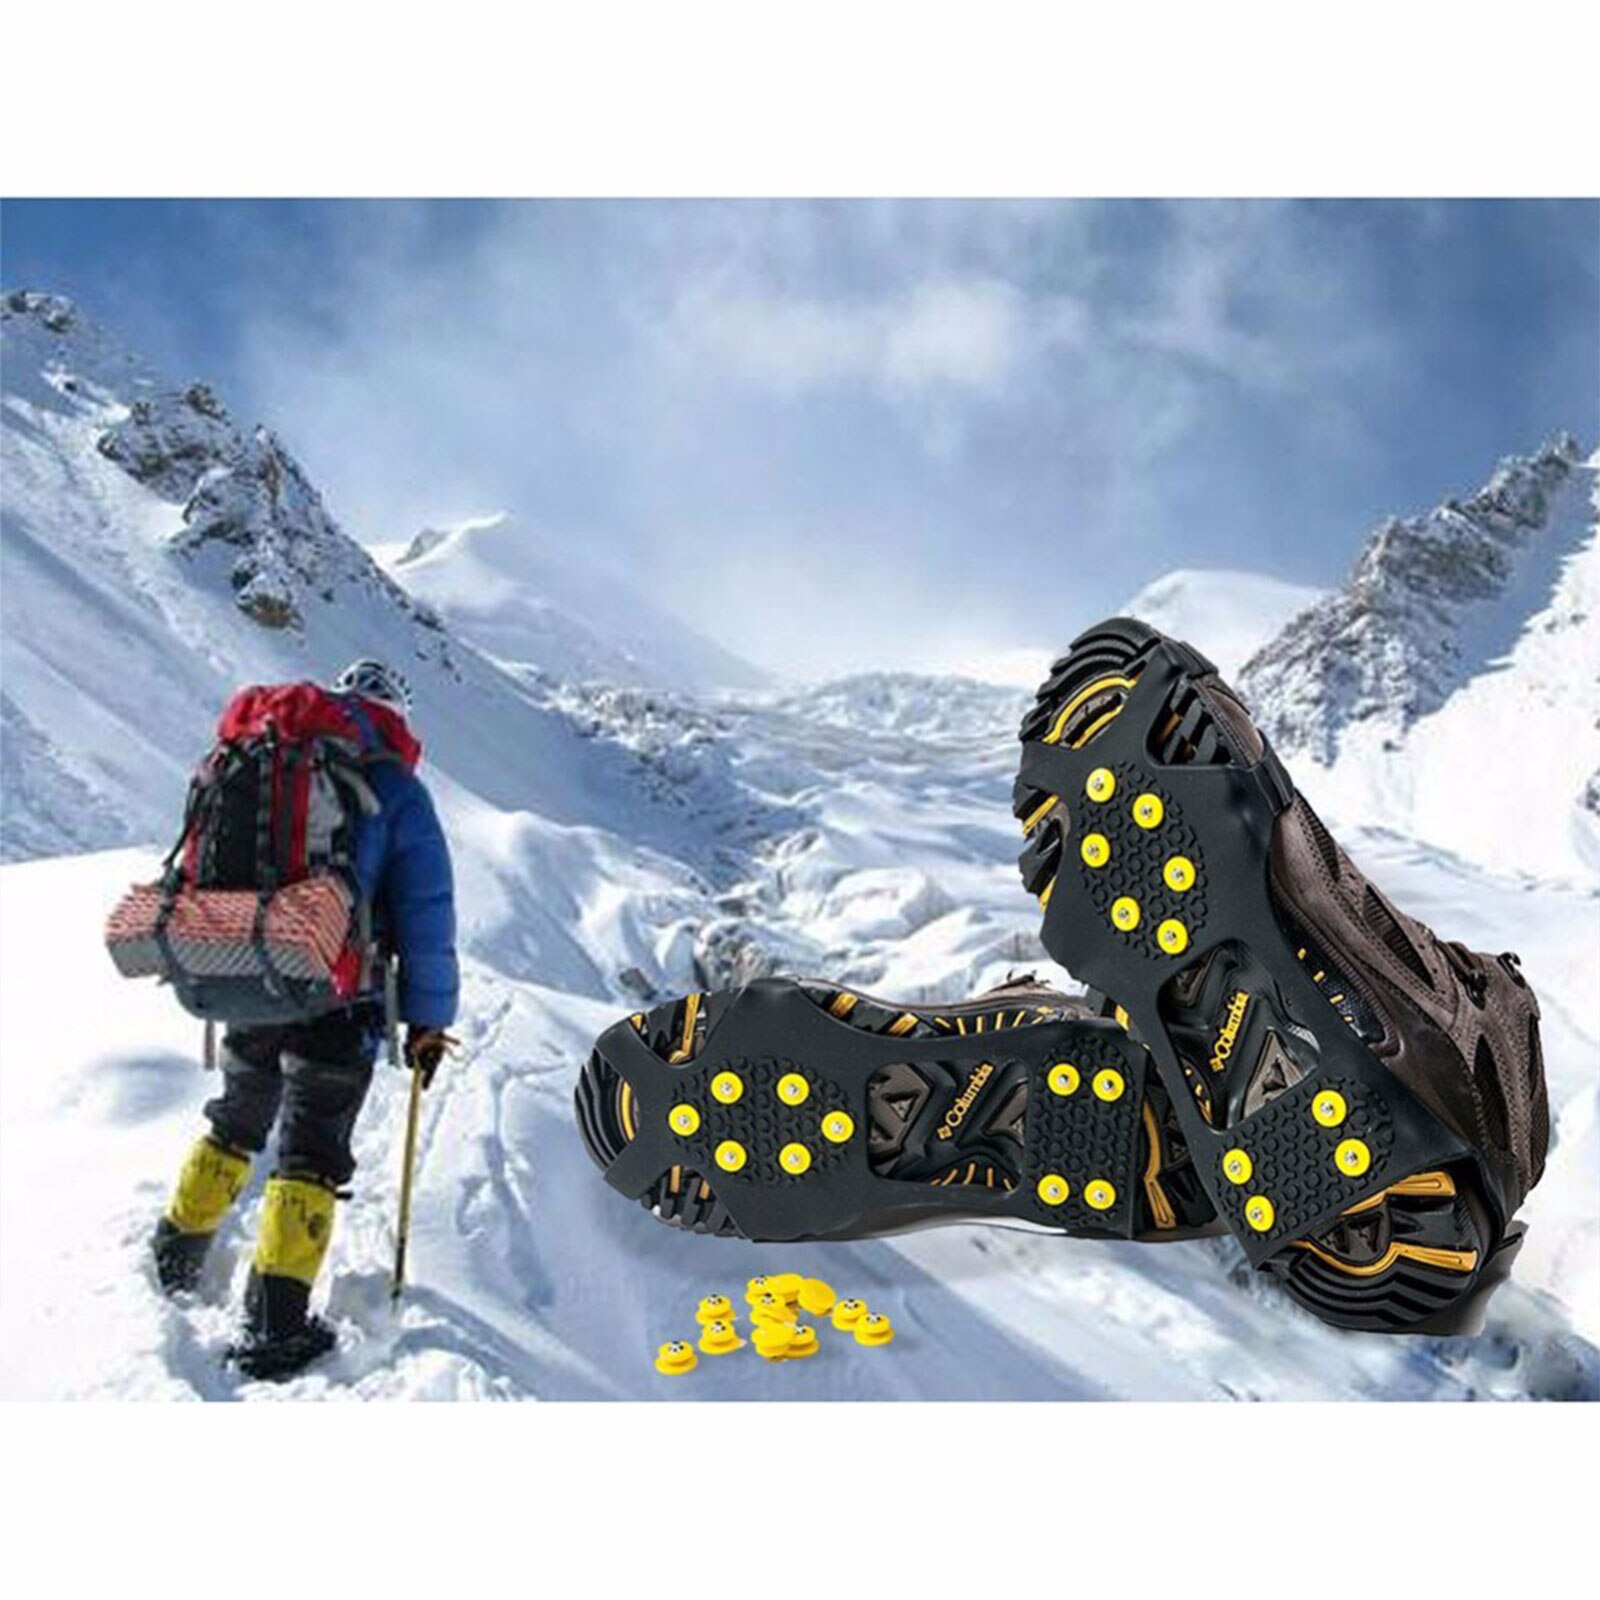 Volwassenen Schoen Cover, Unisex Anti-Slip Overschoenen Wandelschoenen Voor Bergbeklimmen Wandelen, S/M/L/Xl